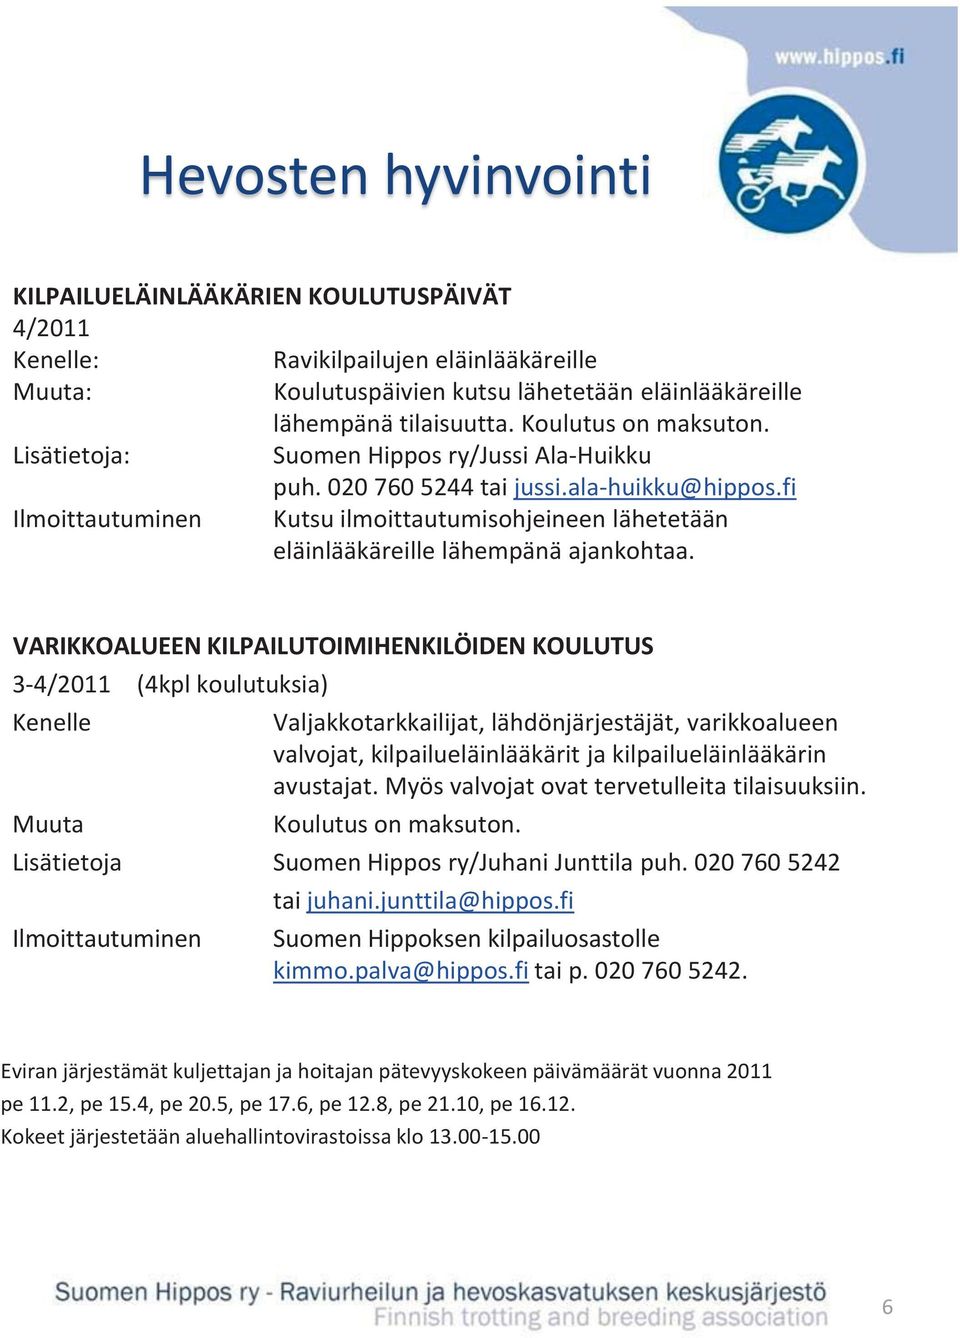 VARIKKOALUEEN KILPAILUTOIMIHENKILÖIDEN KOULUTUS 3-4/2011 (4kpl koulutuksia) Valjakkotarkkailijat, lähdönjärjestäjät, varikkoalueen valvojat, kilpailueläinlääkärit ja kilpailueläinlääkärin avustajat.